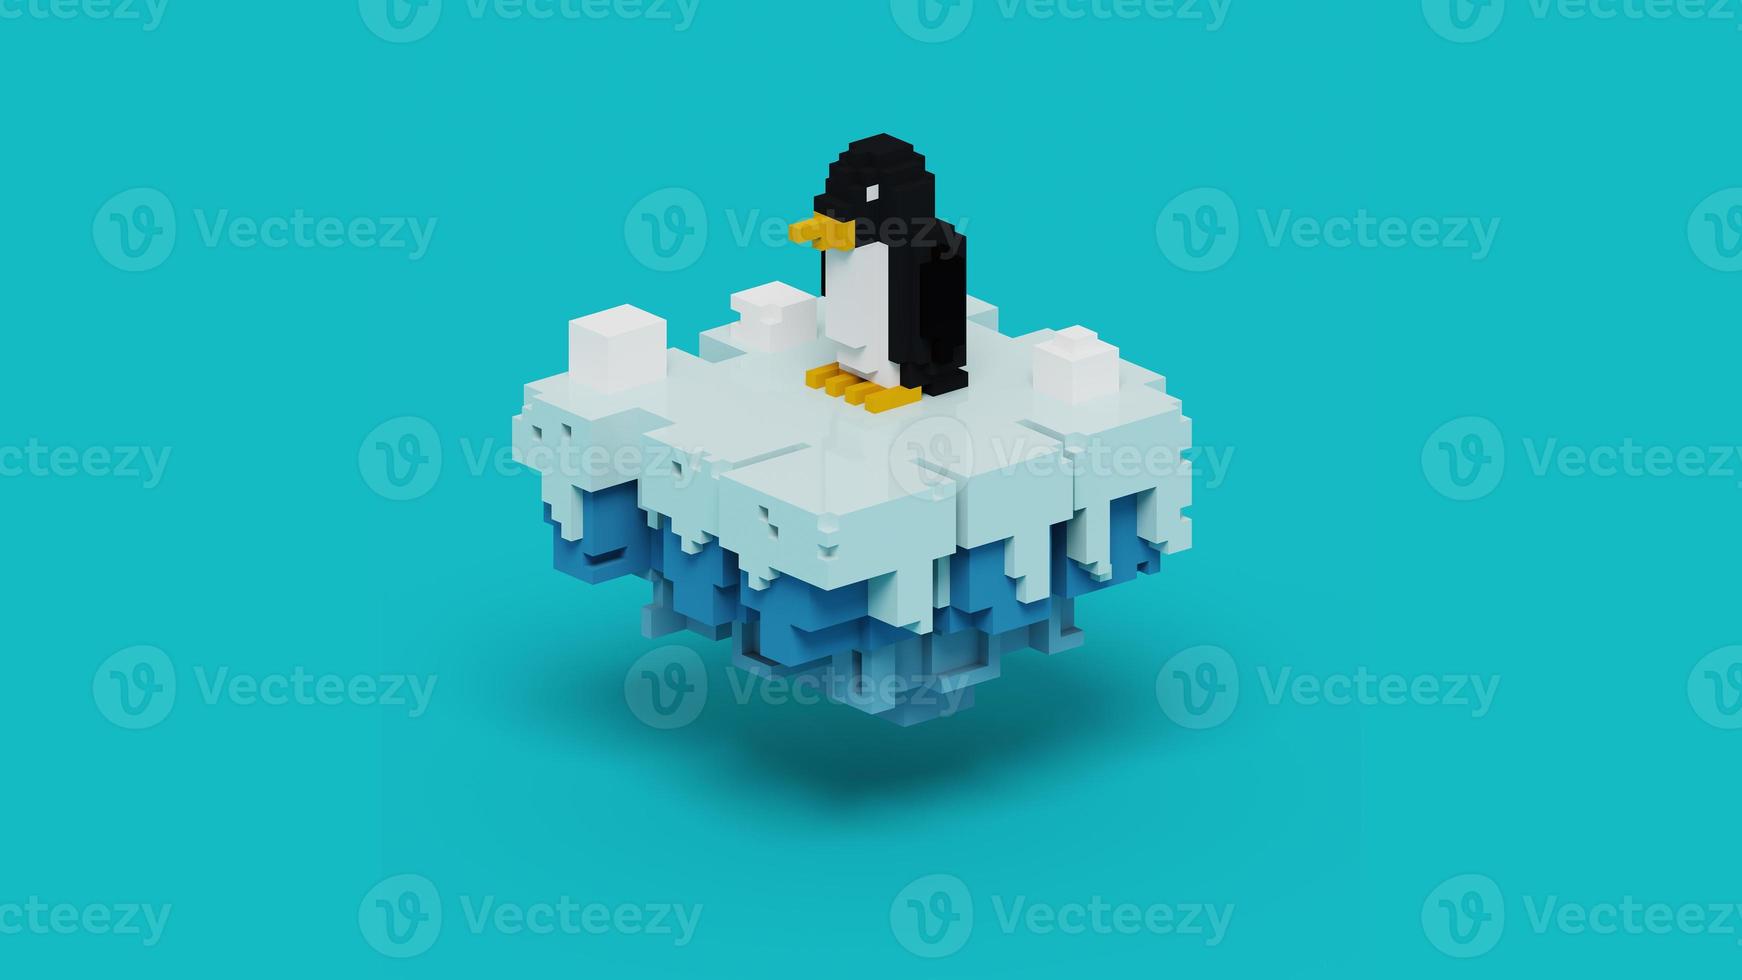 rendu 3d du pingouin voxel sur l'illustration de l'île de neige flottante. en utilisant un jeu de couleurs noir, orange, blanc et bleu. photo